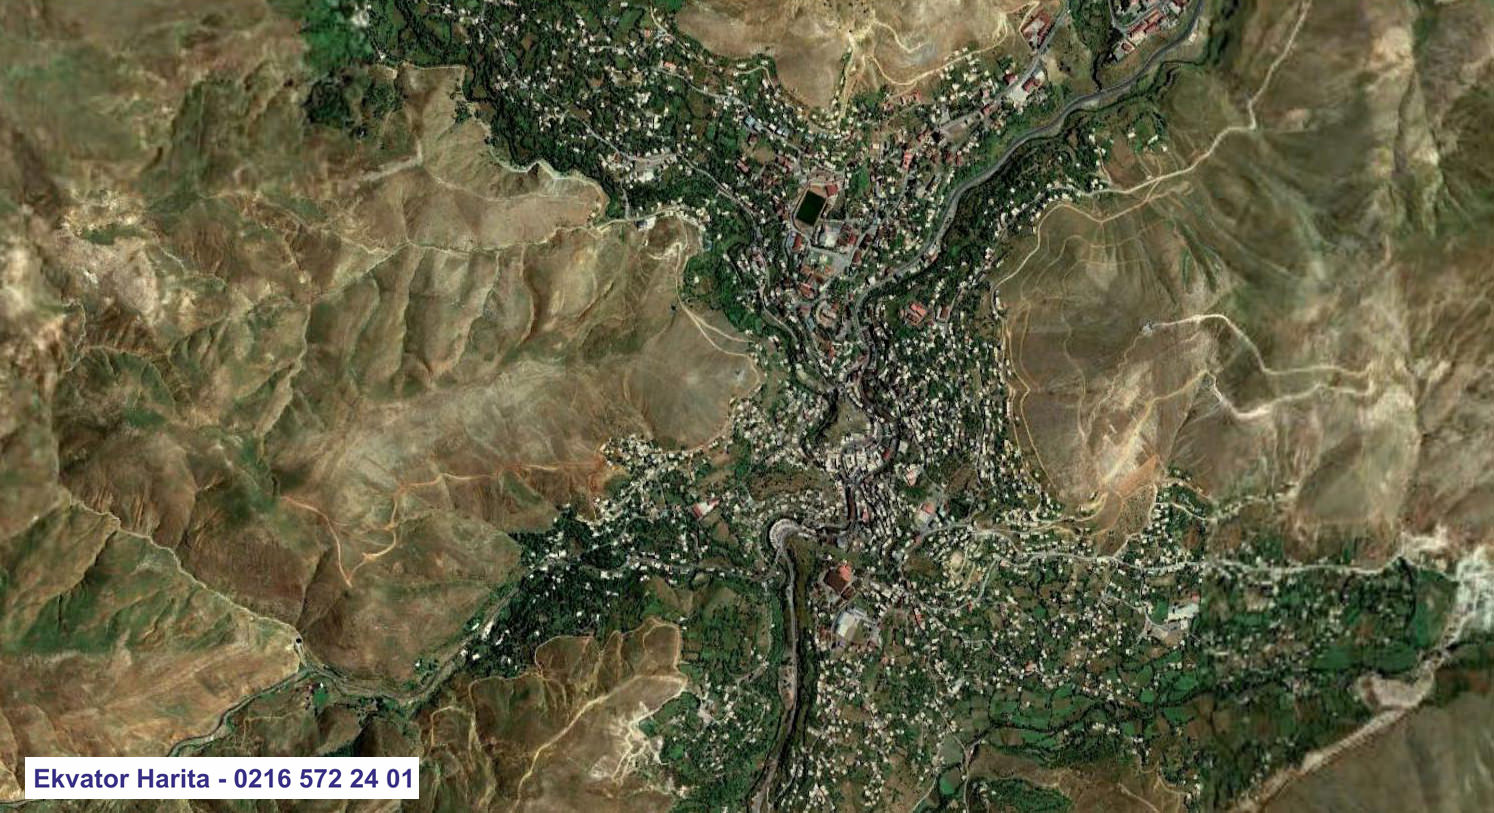 Bitlis Uydu Haritası Örnek Fotoğrafı